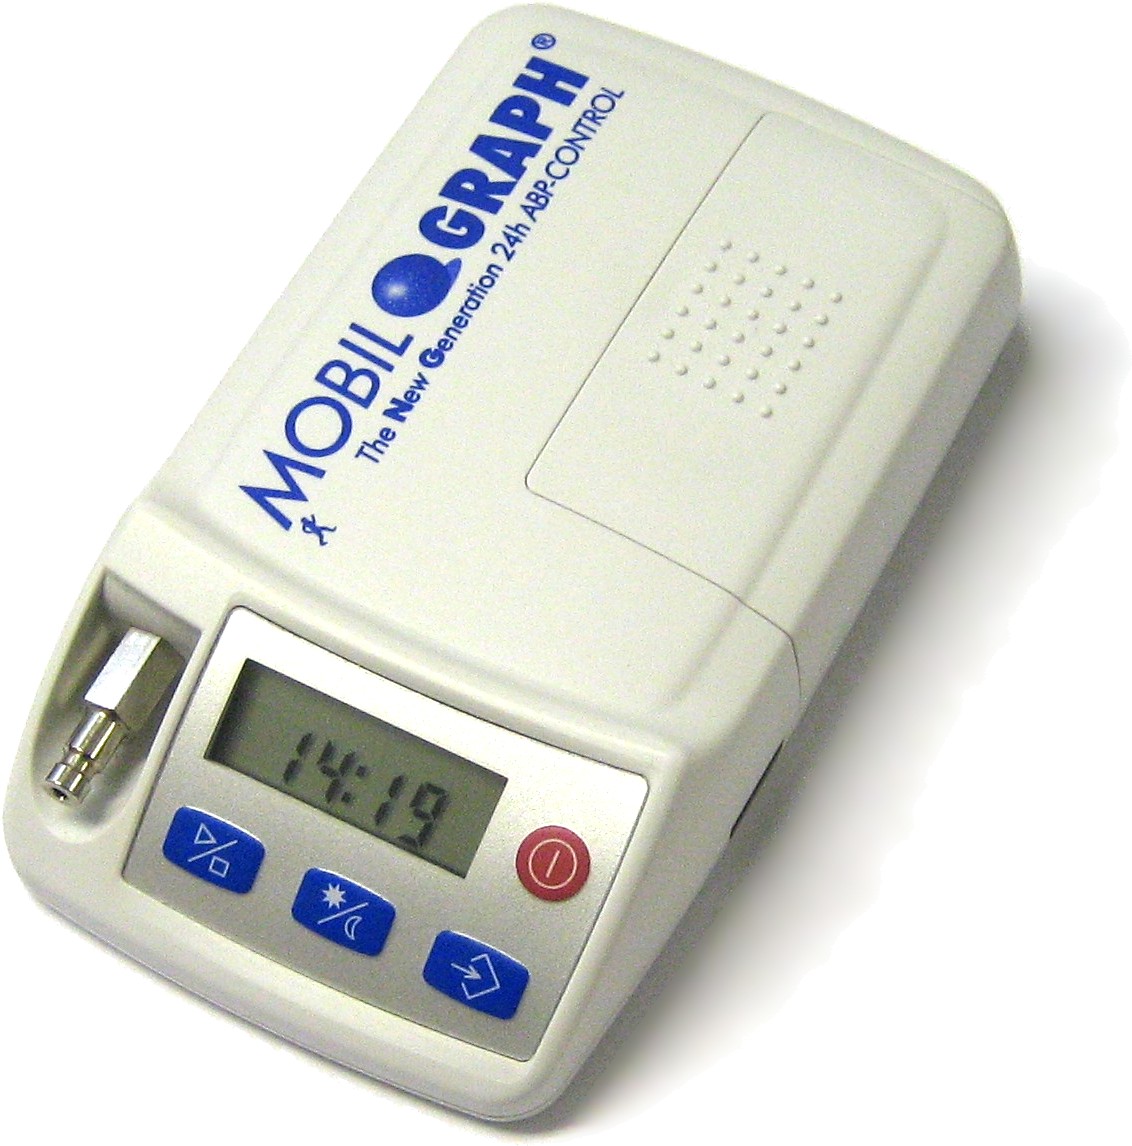 24小时动态血压，德国进口Mobil动态血压监护仪